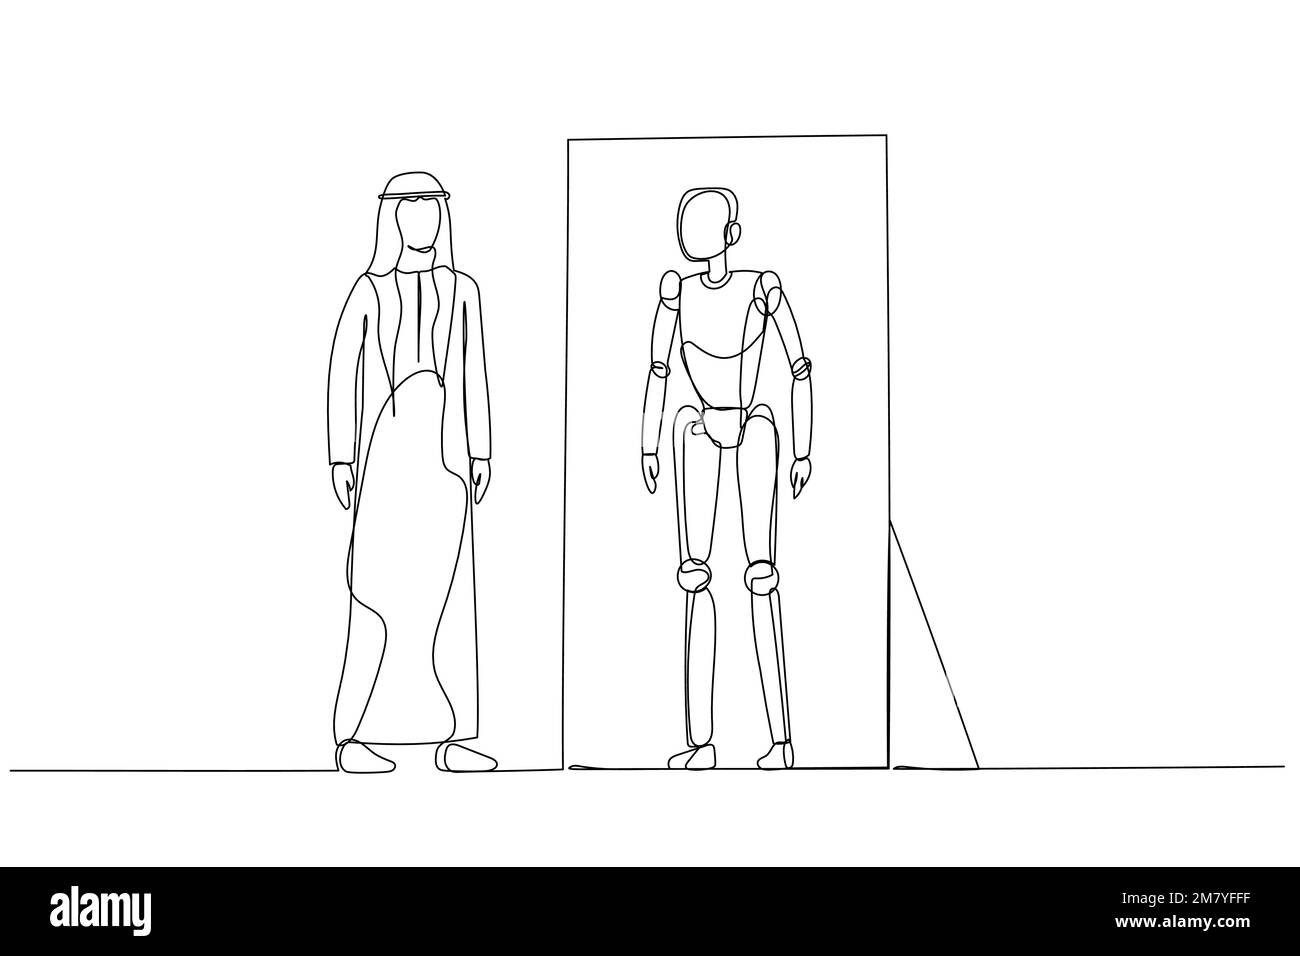 Cartone animato di un uomo arabo che guarda in specchio e vede la versione robot del concetto di sé dell'intelligenza artificiale. Design di stile artistico a linea continua Illustrazione Vettoriale